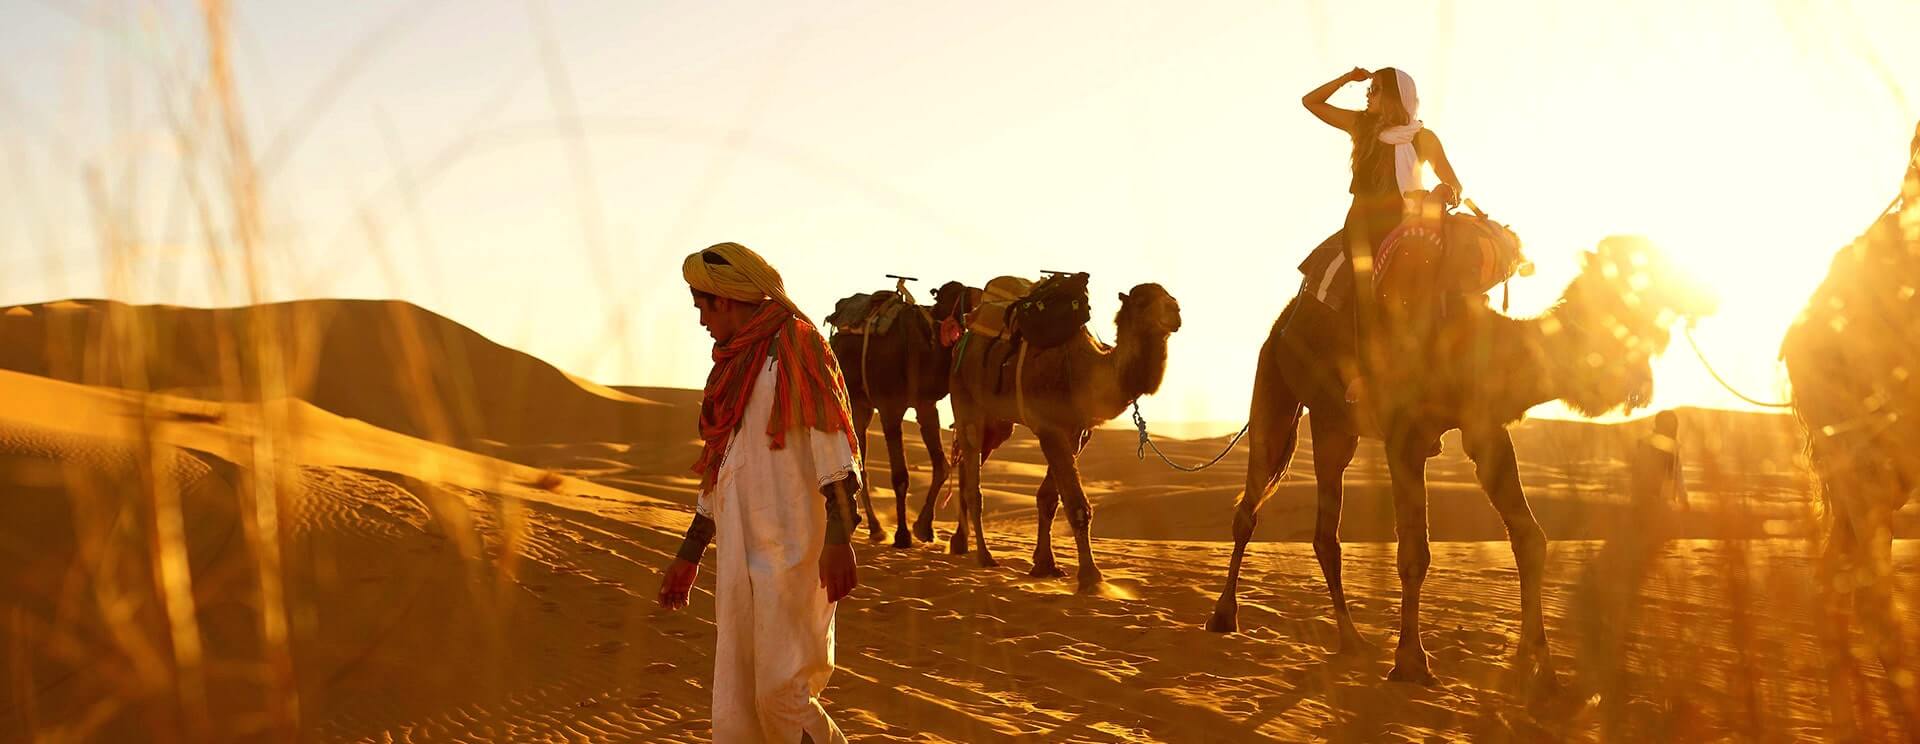 camel trek in morocco sahara